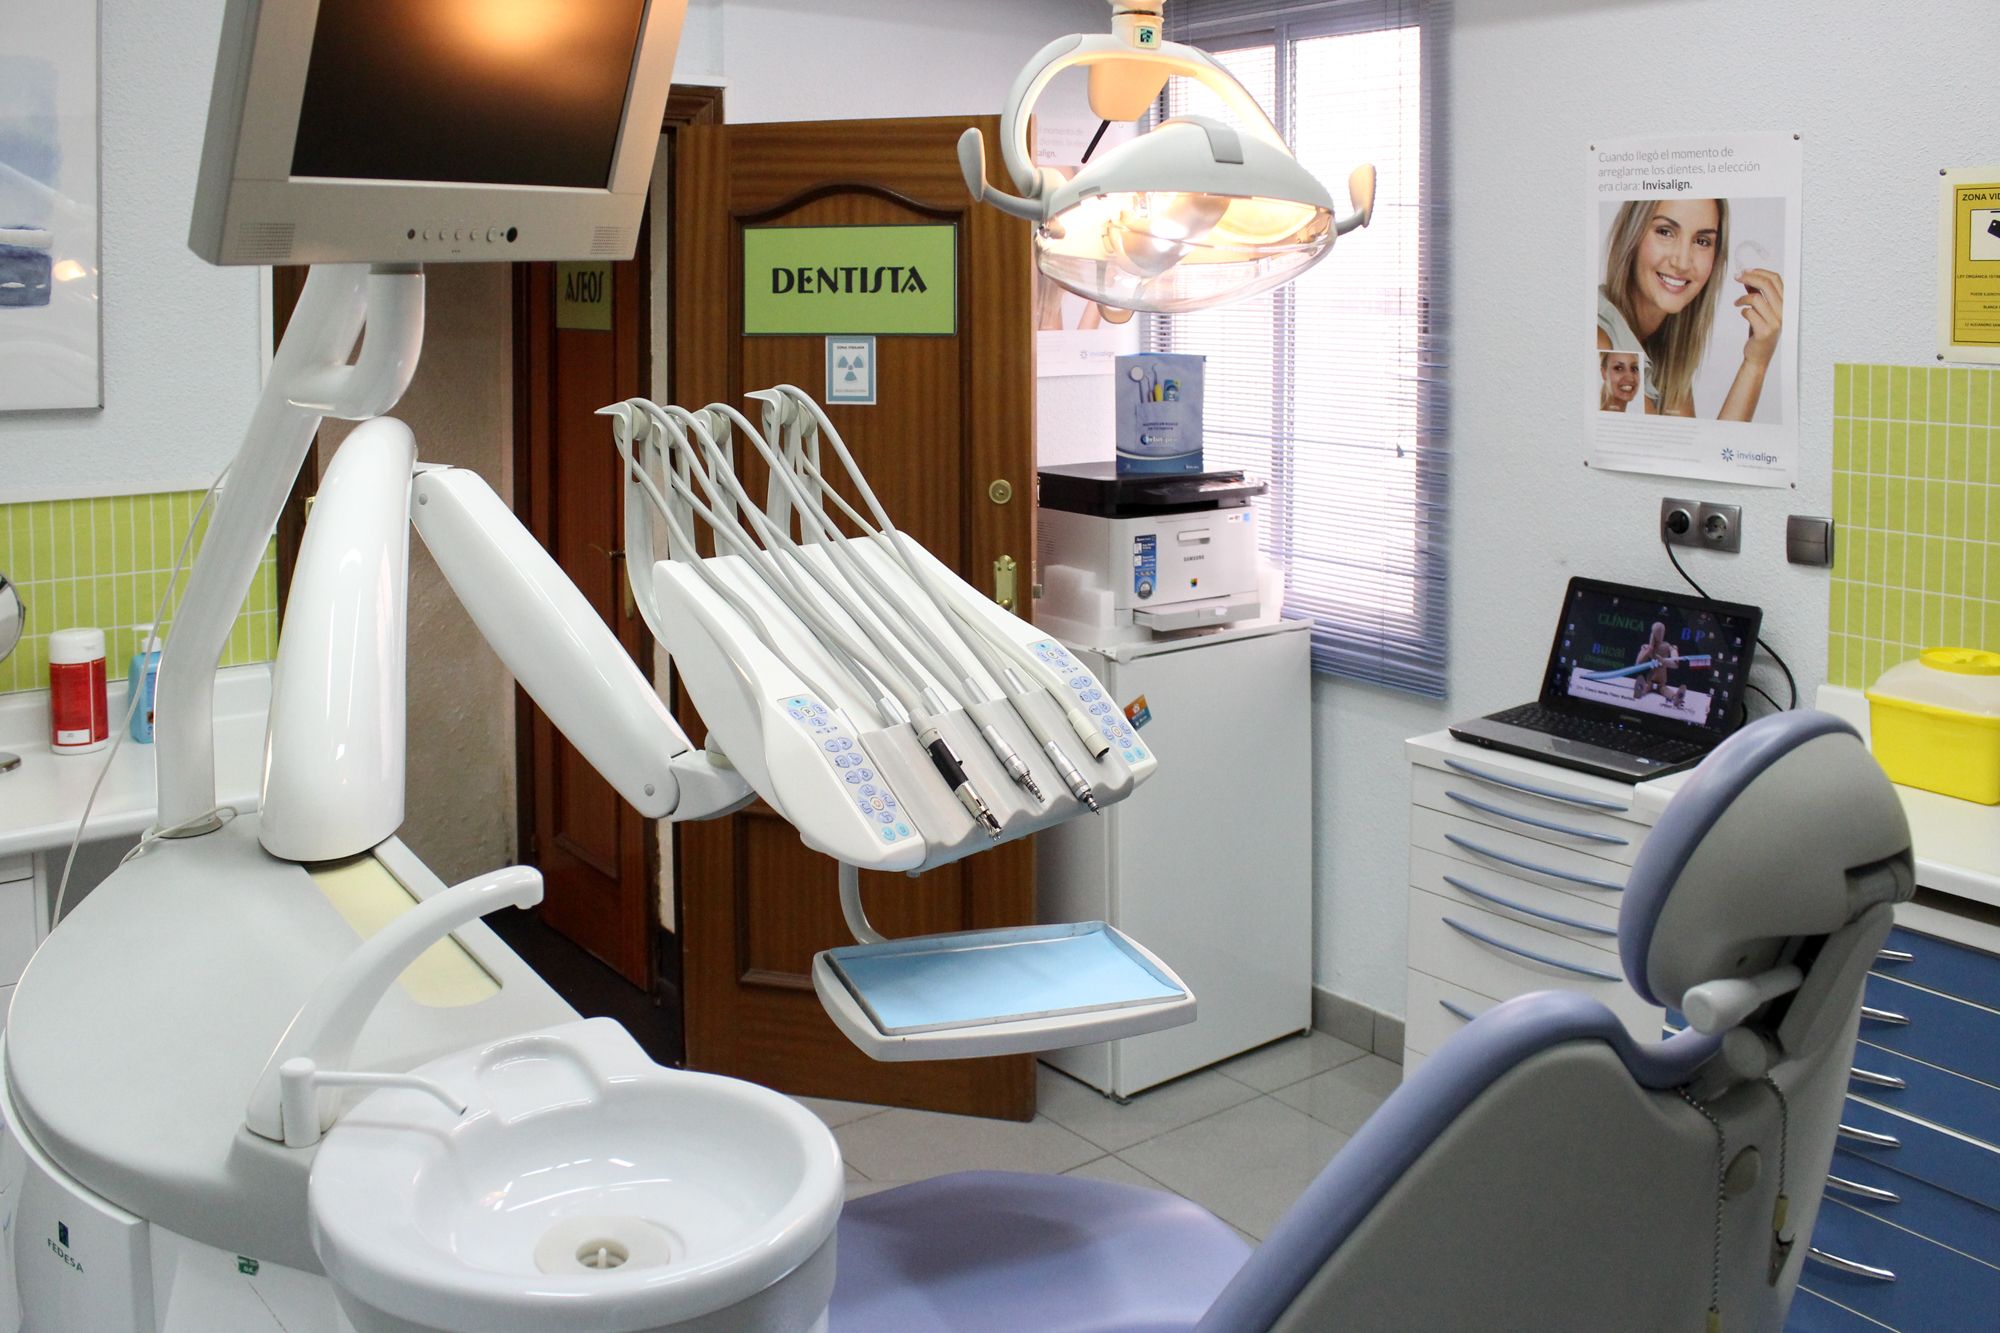 Foto 9 de Dentistas en Madrid | Clínica BP Bucal y Podológica